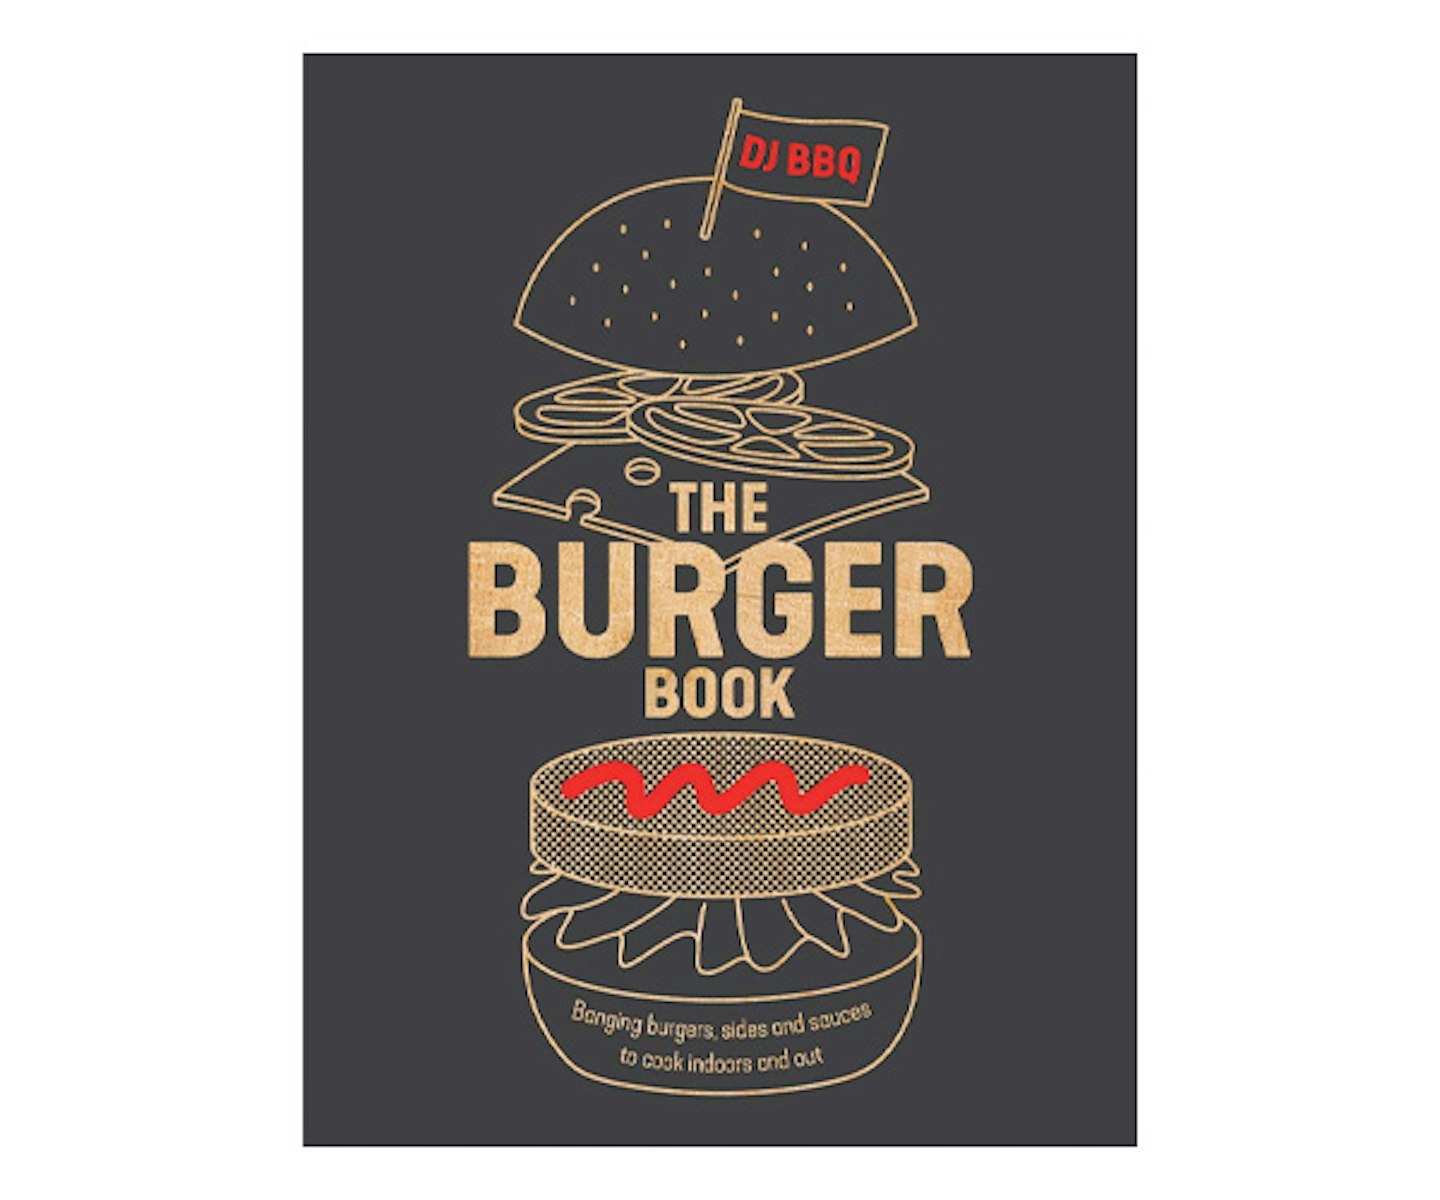 The Burger Book Banging burgers